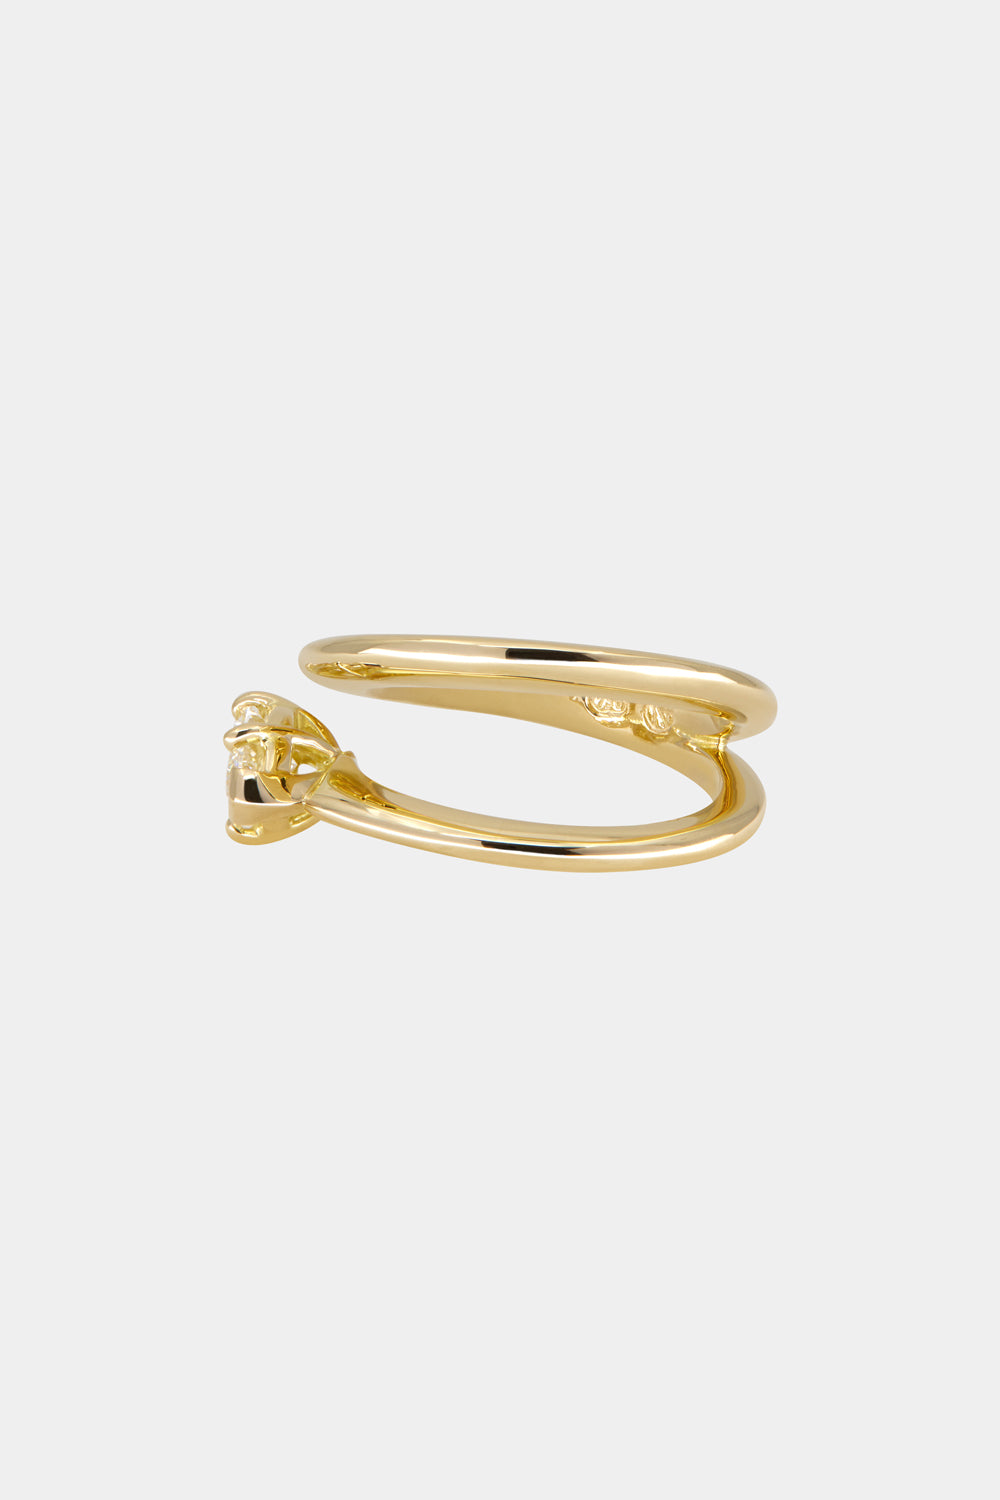 Natasha East West Marquise Diamond Wrap Ring | 18K Gold